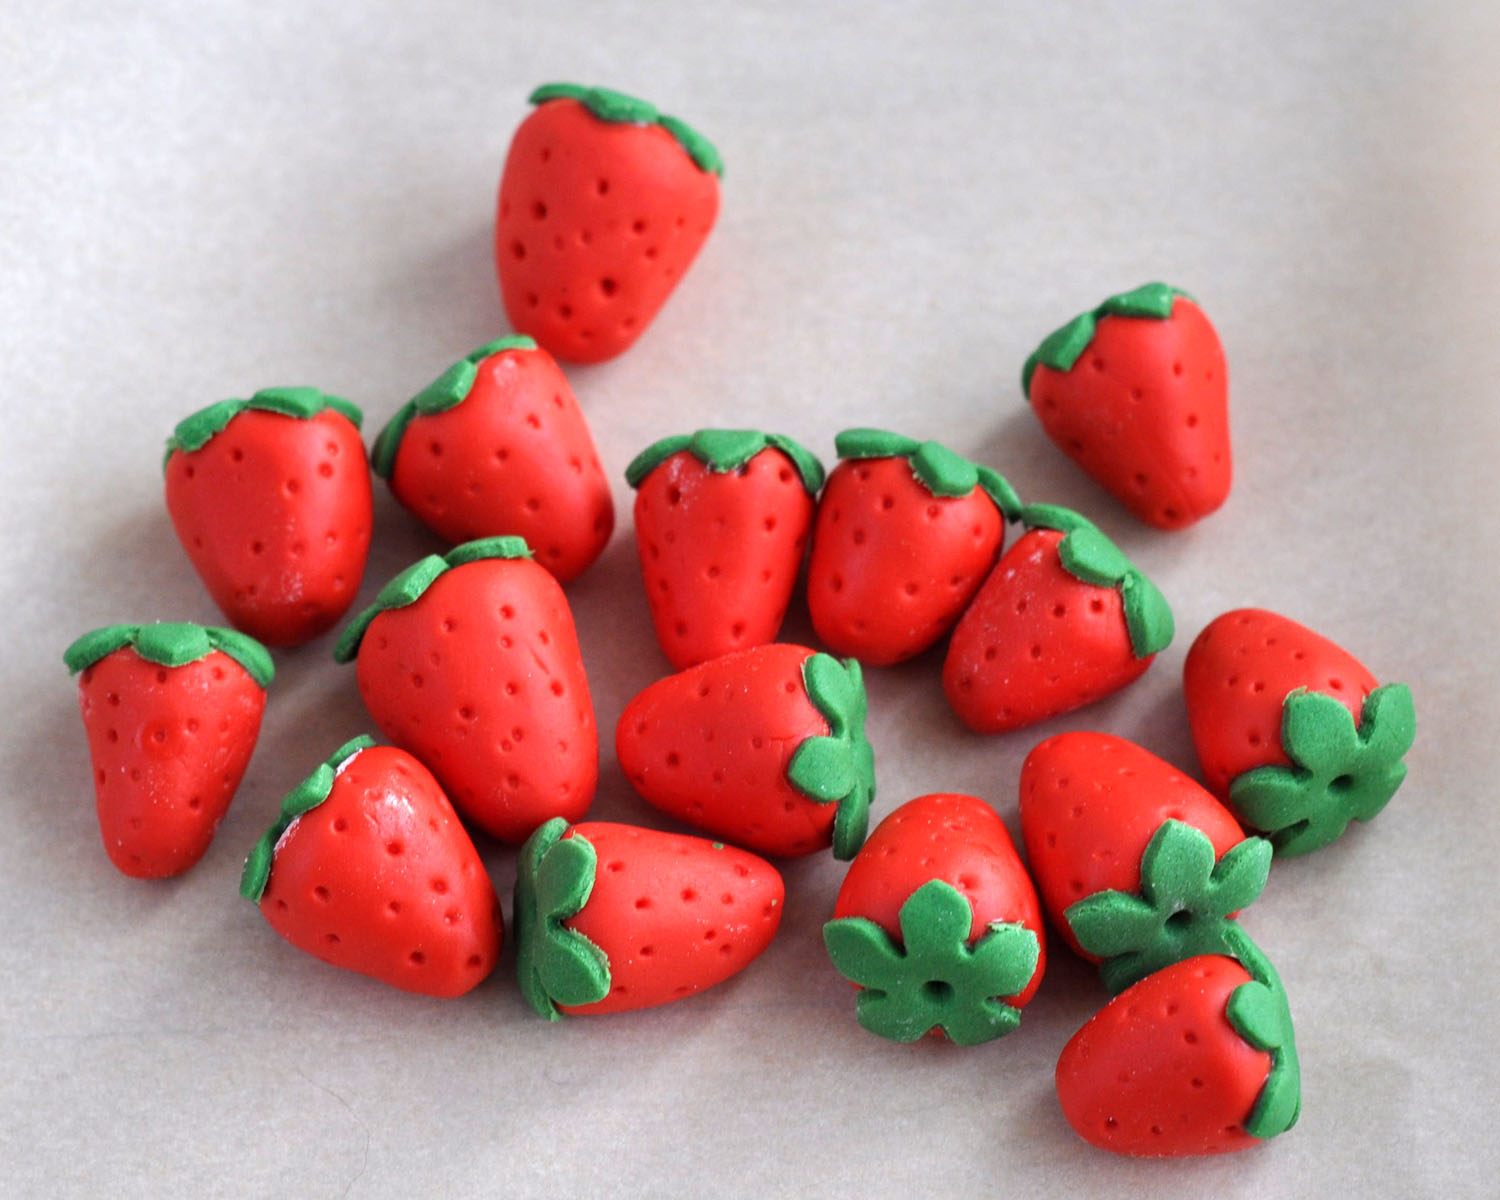 http://2.bp.blogspot.com/-f89-y9K-s4c/TtABJmVgVaI/AAAAAAAACKE/XdG_LQlOSkE/s1600/fondant+strawberries.jpg